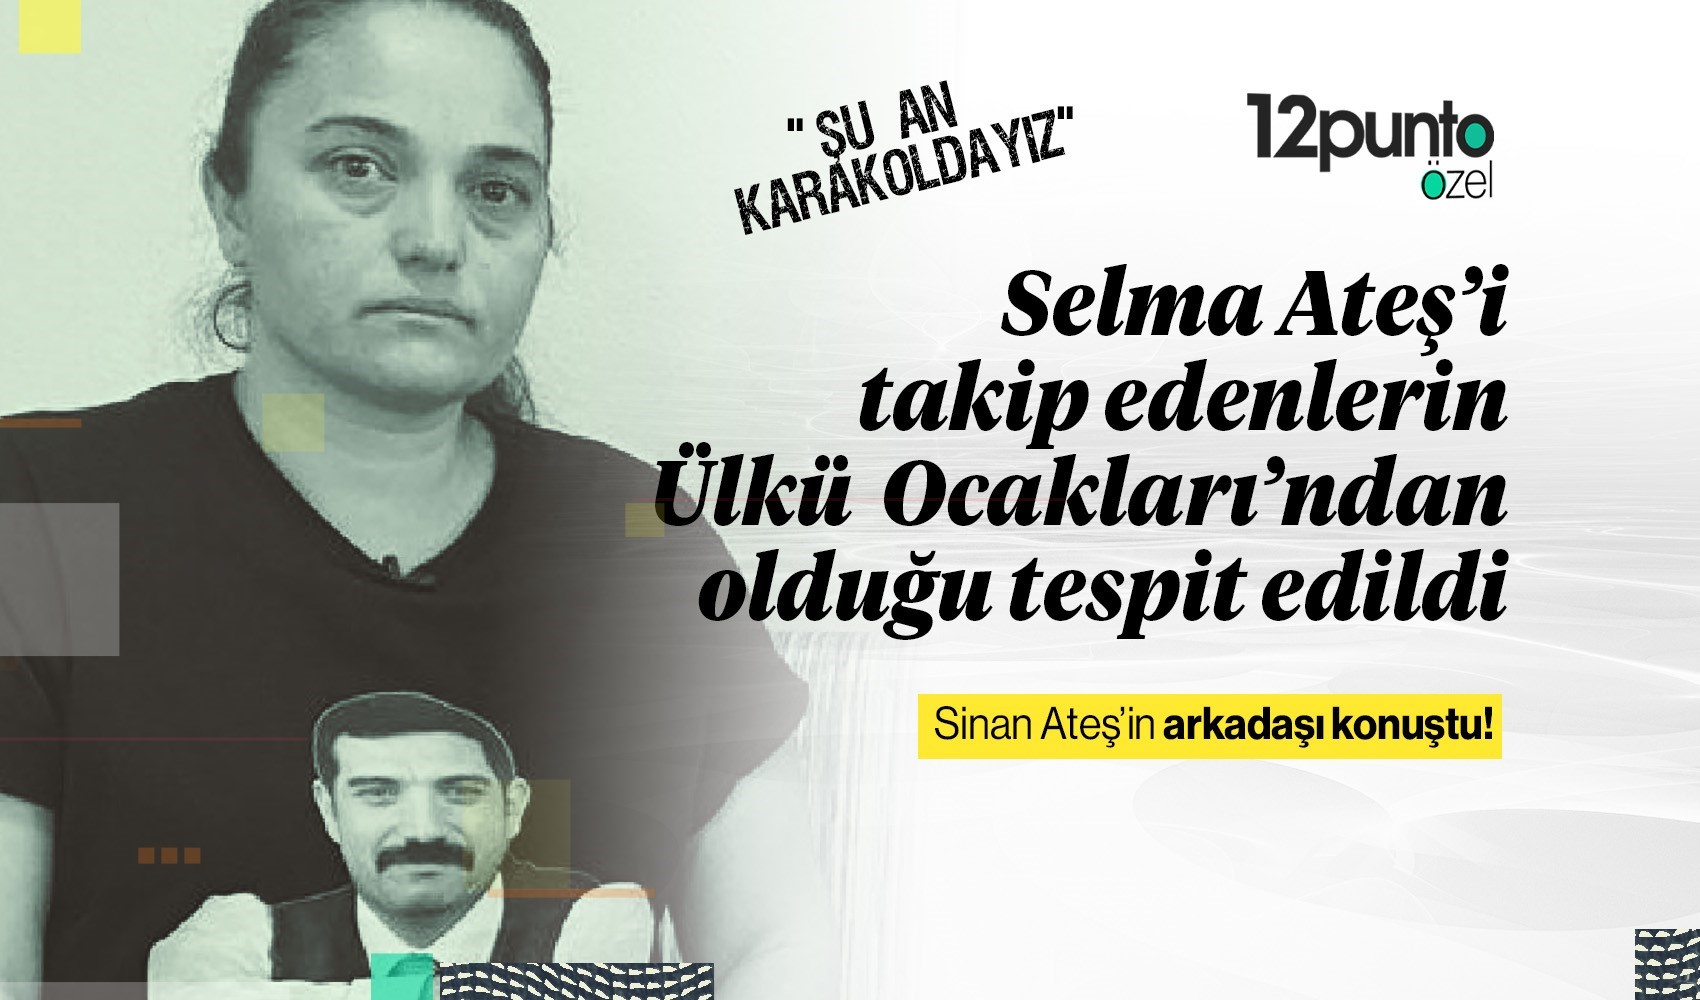 Sinan Ateş’in arkadaşı Cahit Özdemir: Selma Ateş’i takip edenlerin Bursa Ülkü Ocakları’ndan olduğu tespit edildi